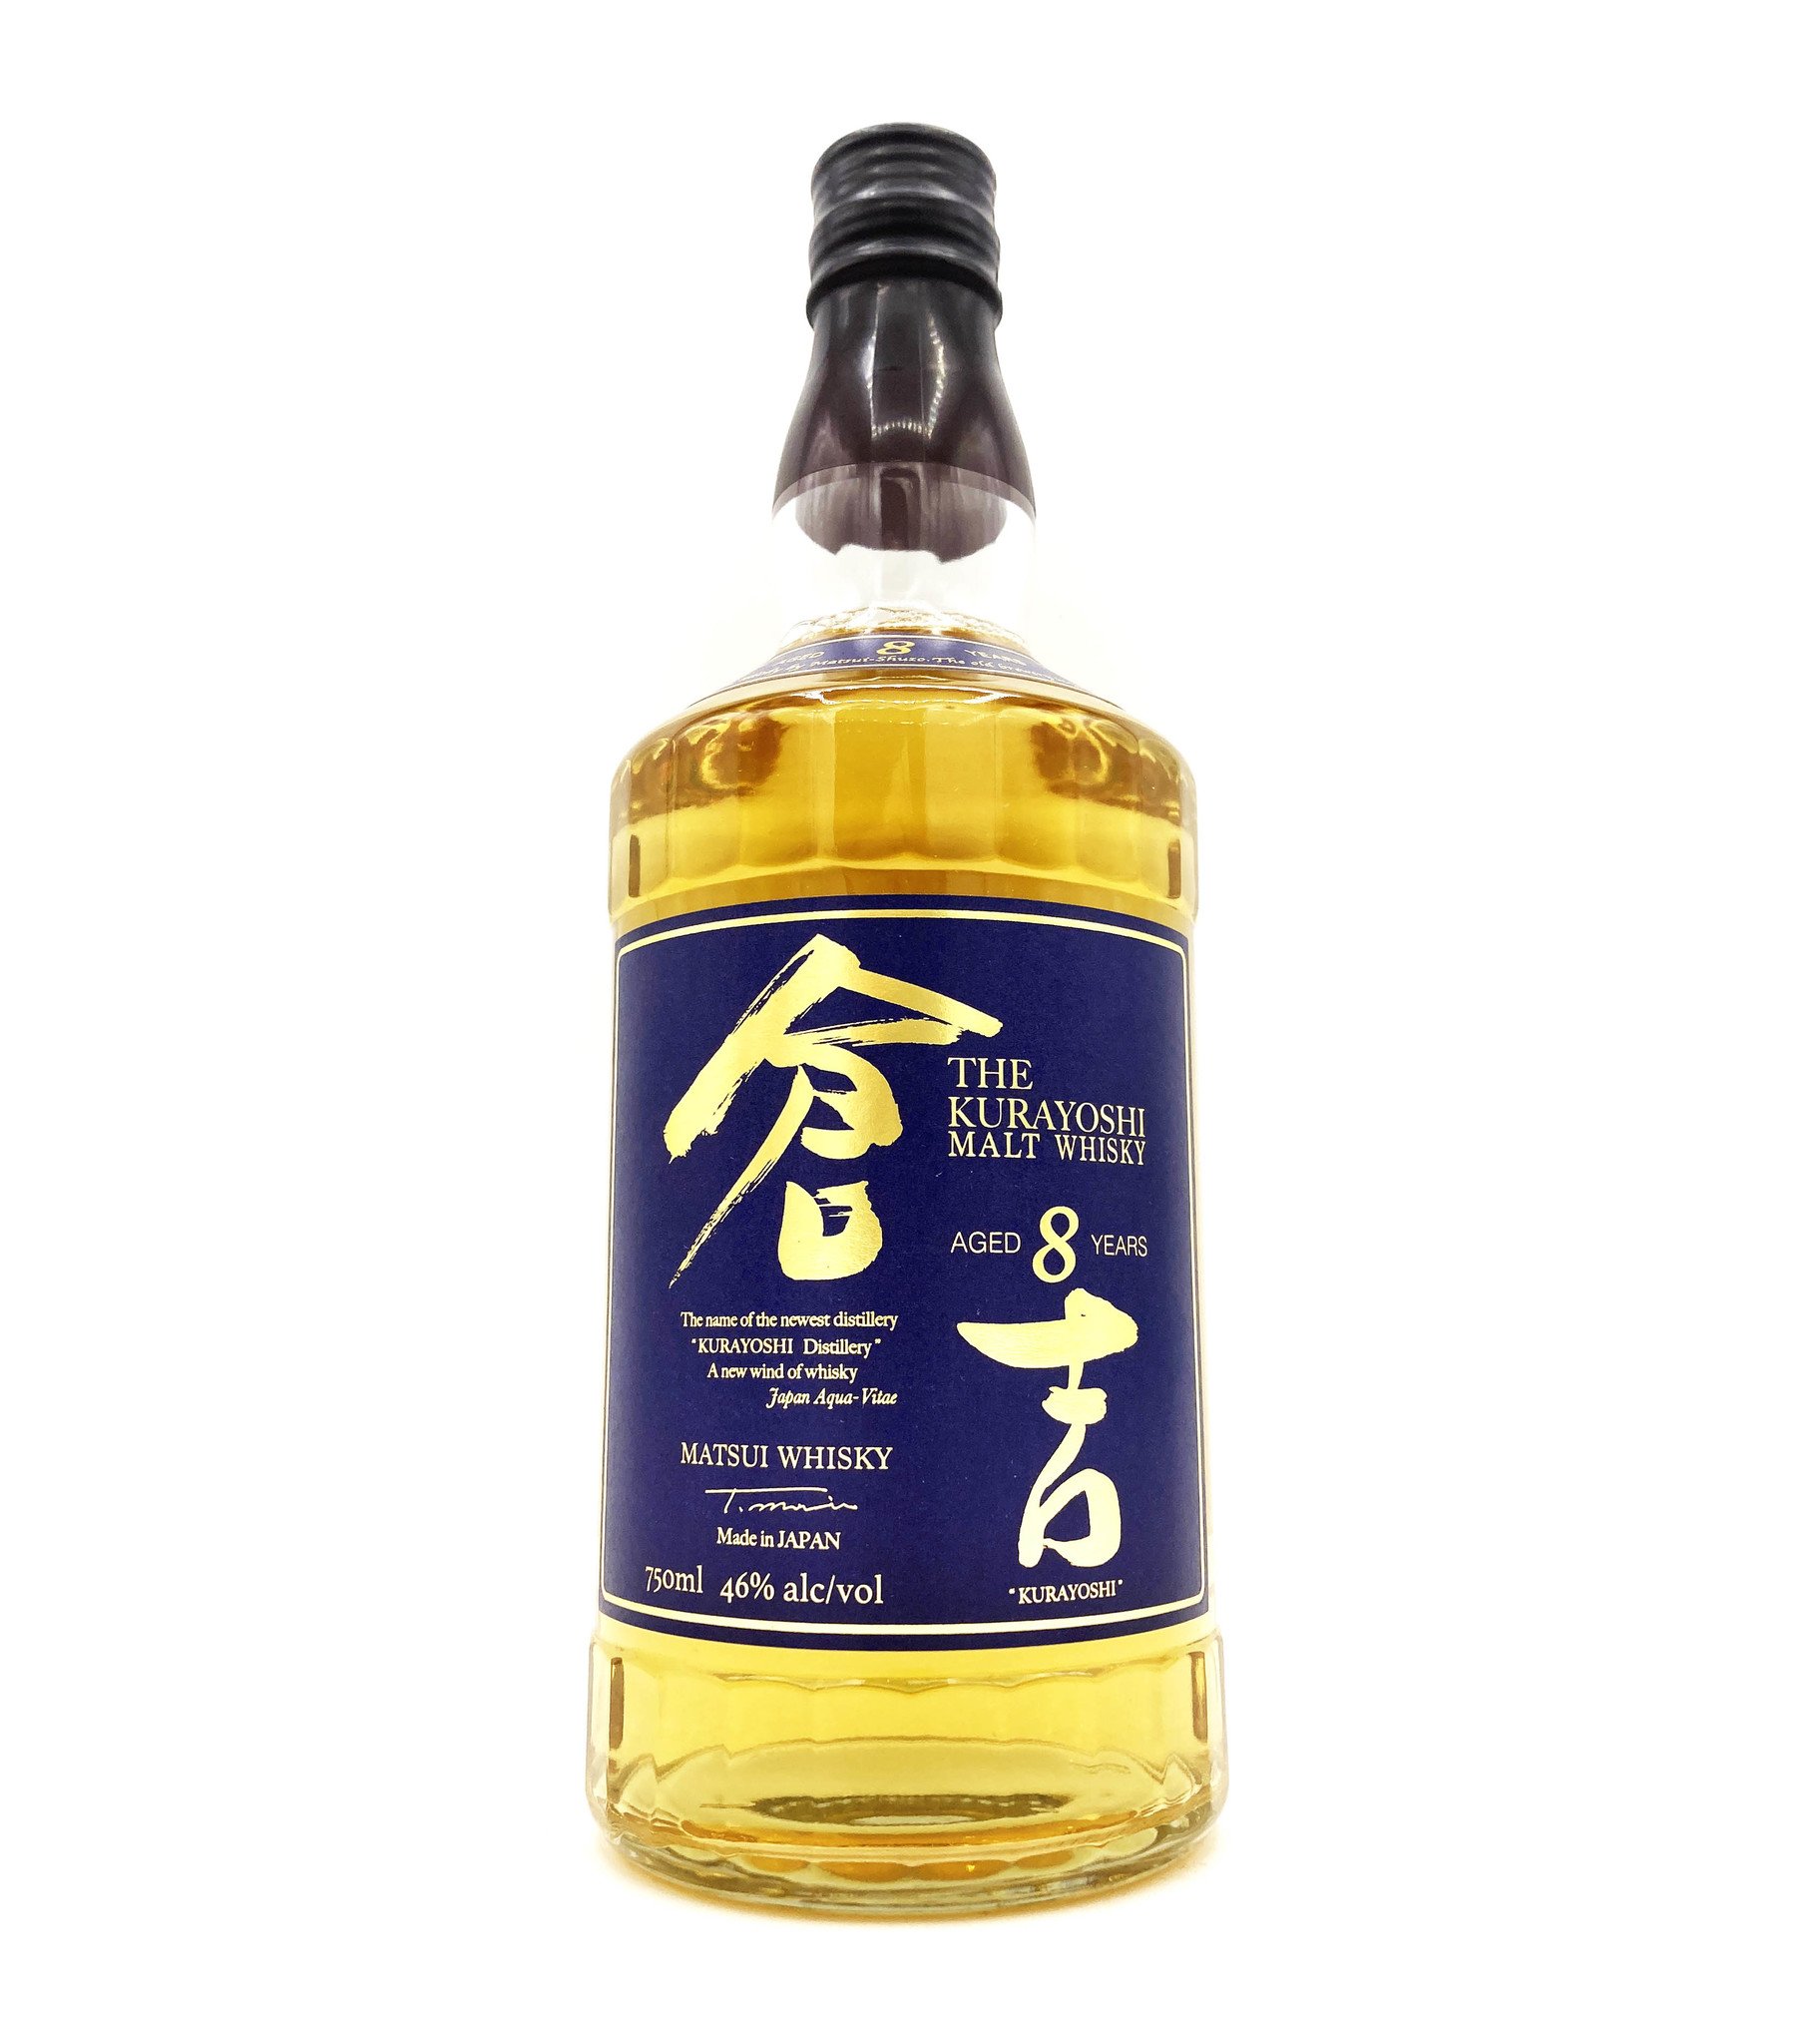 Kurayoshi 8 year Malt Whisky, Matsui Distillery